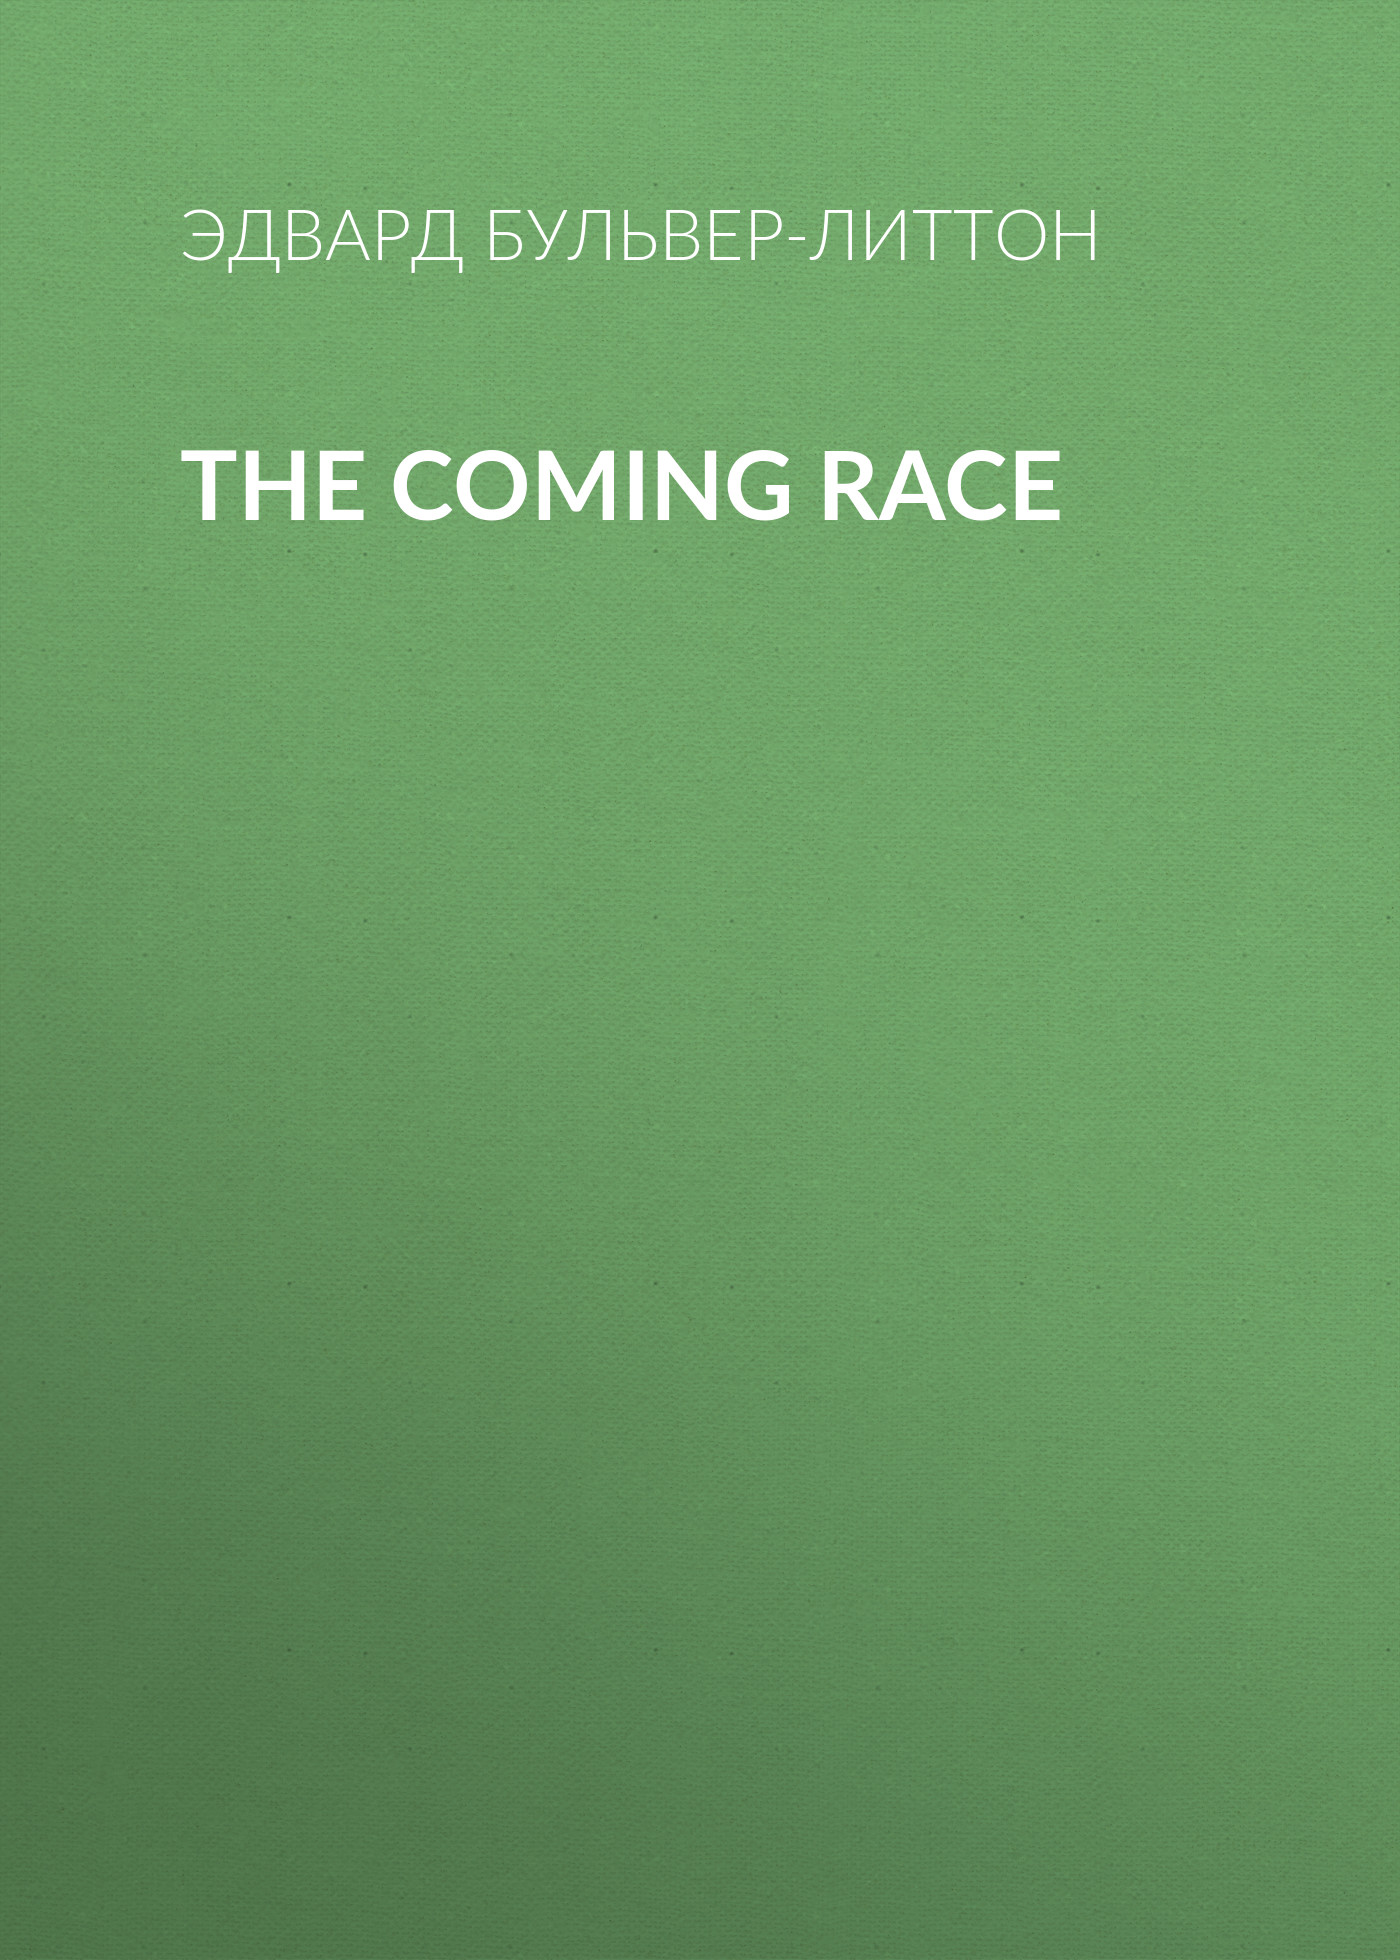 Книга The Coming Race из серии , созданная Эдвард Бульвер-Литтон, может относится к жанру Зарубежная классика, Литература 19 века, Европейская старинная литература, Зарубежная старинная литература. Стоимость электронной книги The Coming Race с идентификатором 35007753 составляет 0 руб.